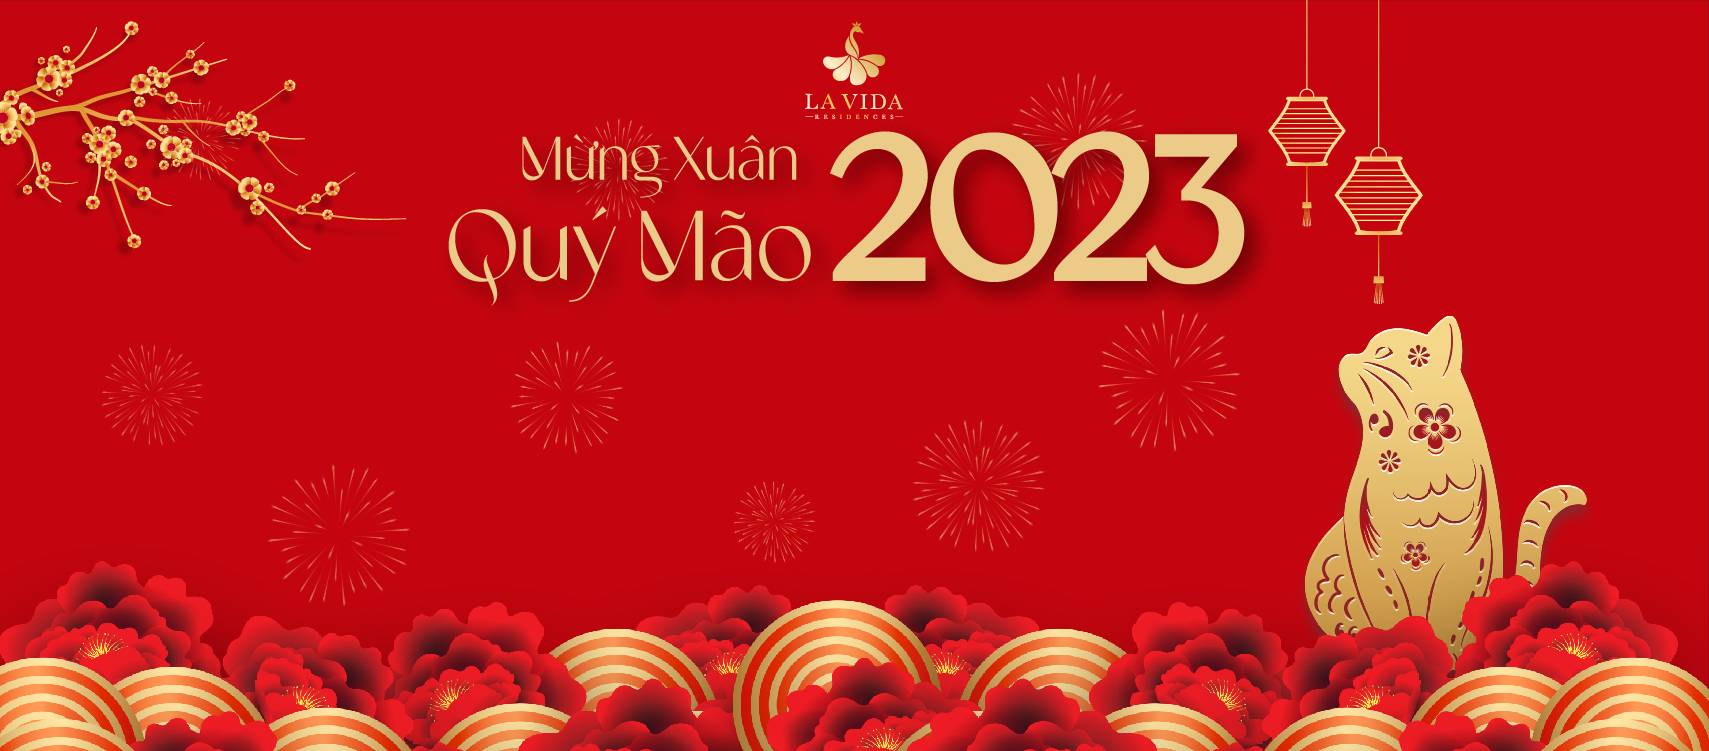 La Vida Residences Vũng Tàu NĂM 2023 Quý Mão